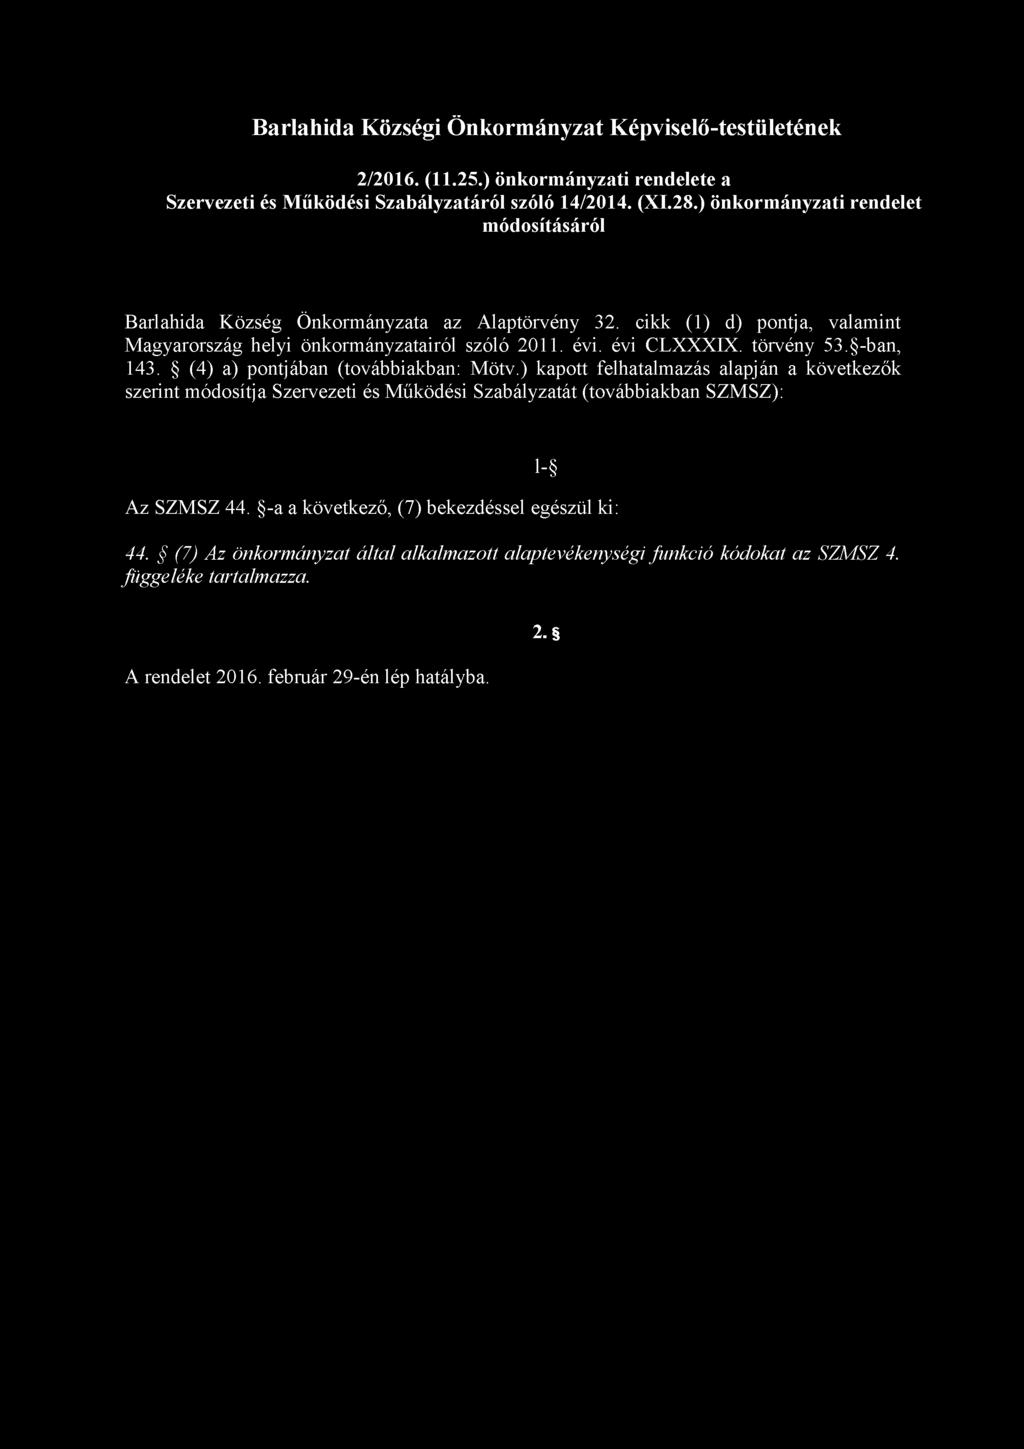 Barlahida Községi Önkormányzat Képviselő-testületének 2/2016. (11.25.) önkormányzati rendelete a Szervezeti és Működési Szabályzatáról szóló 14/2014. (XI.28.